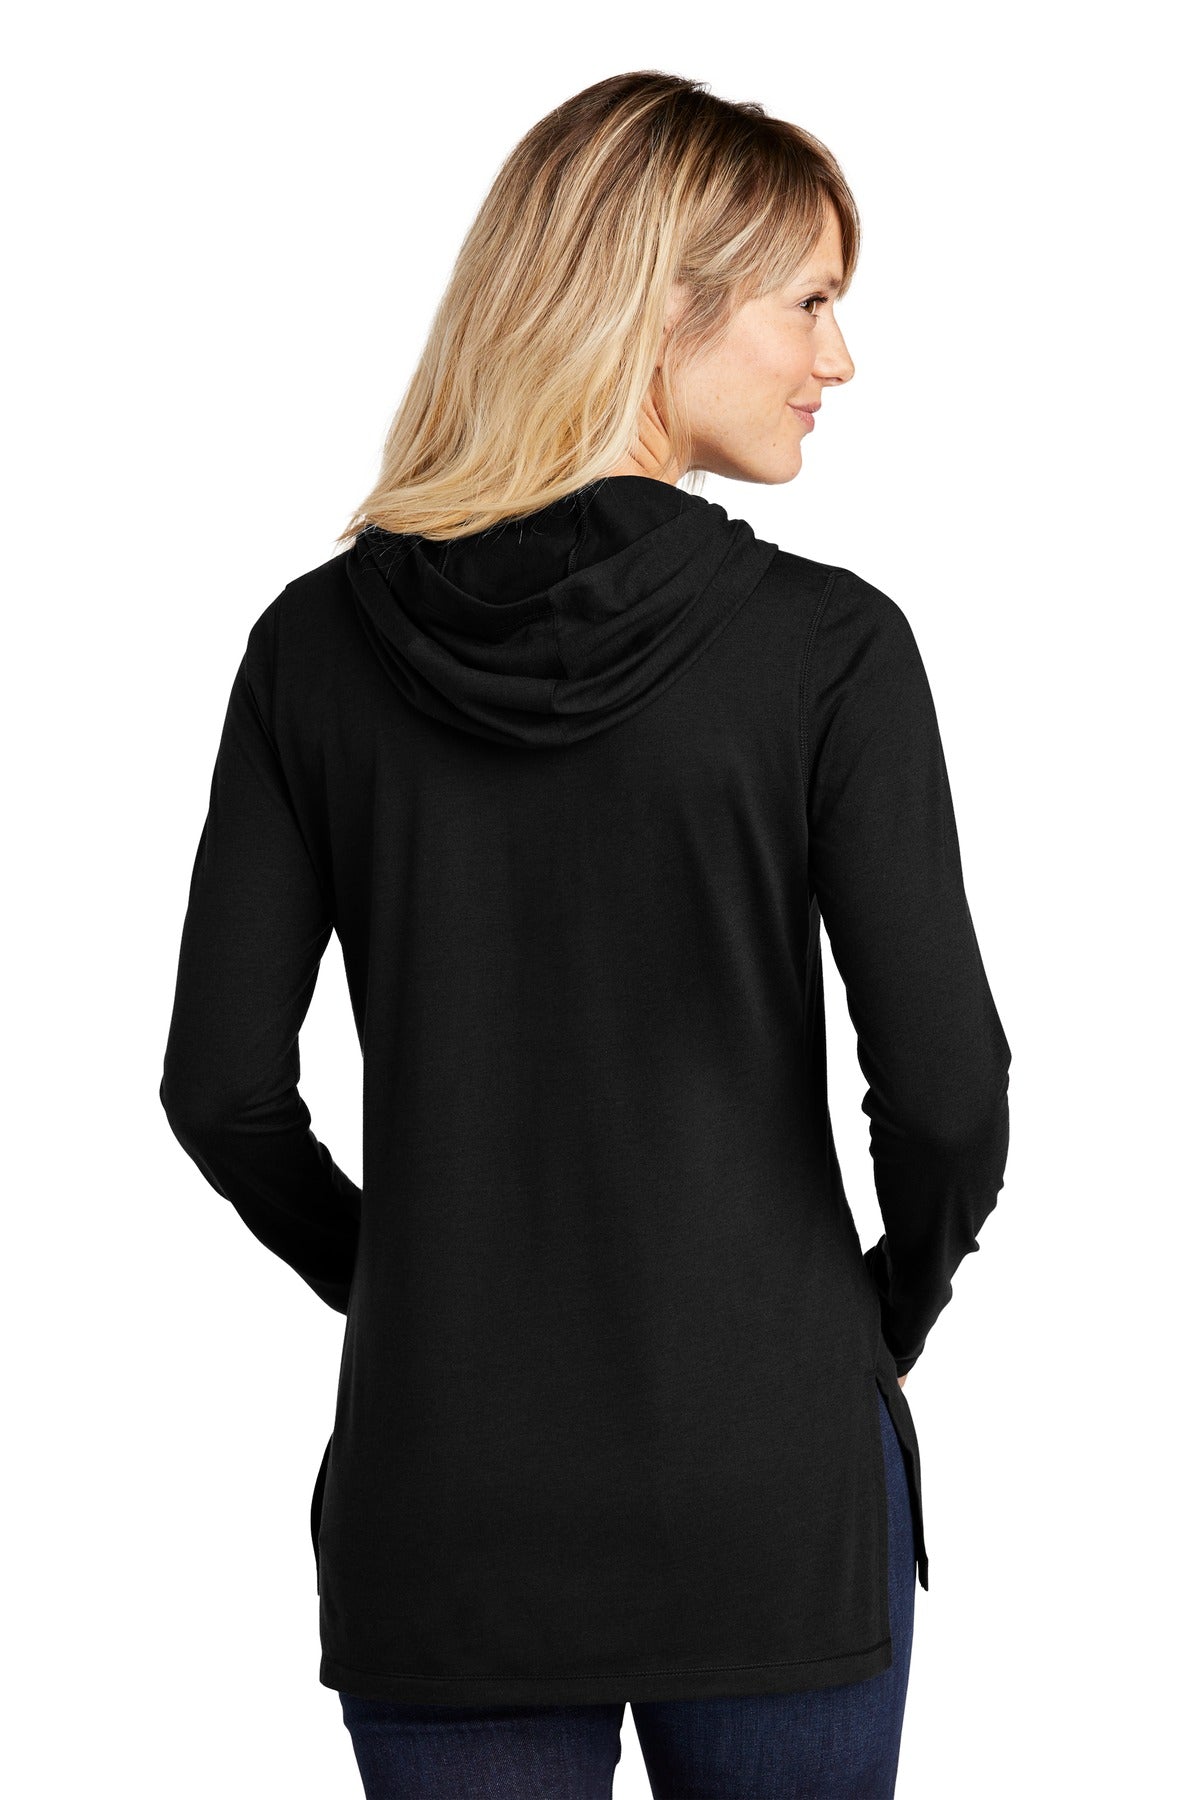 Sport-Tek ® Ladies PosiCharge ® Tri-Blend Wicking Long Sleeve Hoodie LST406 - DFW Impression